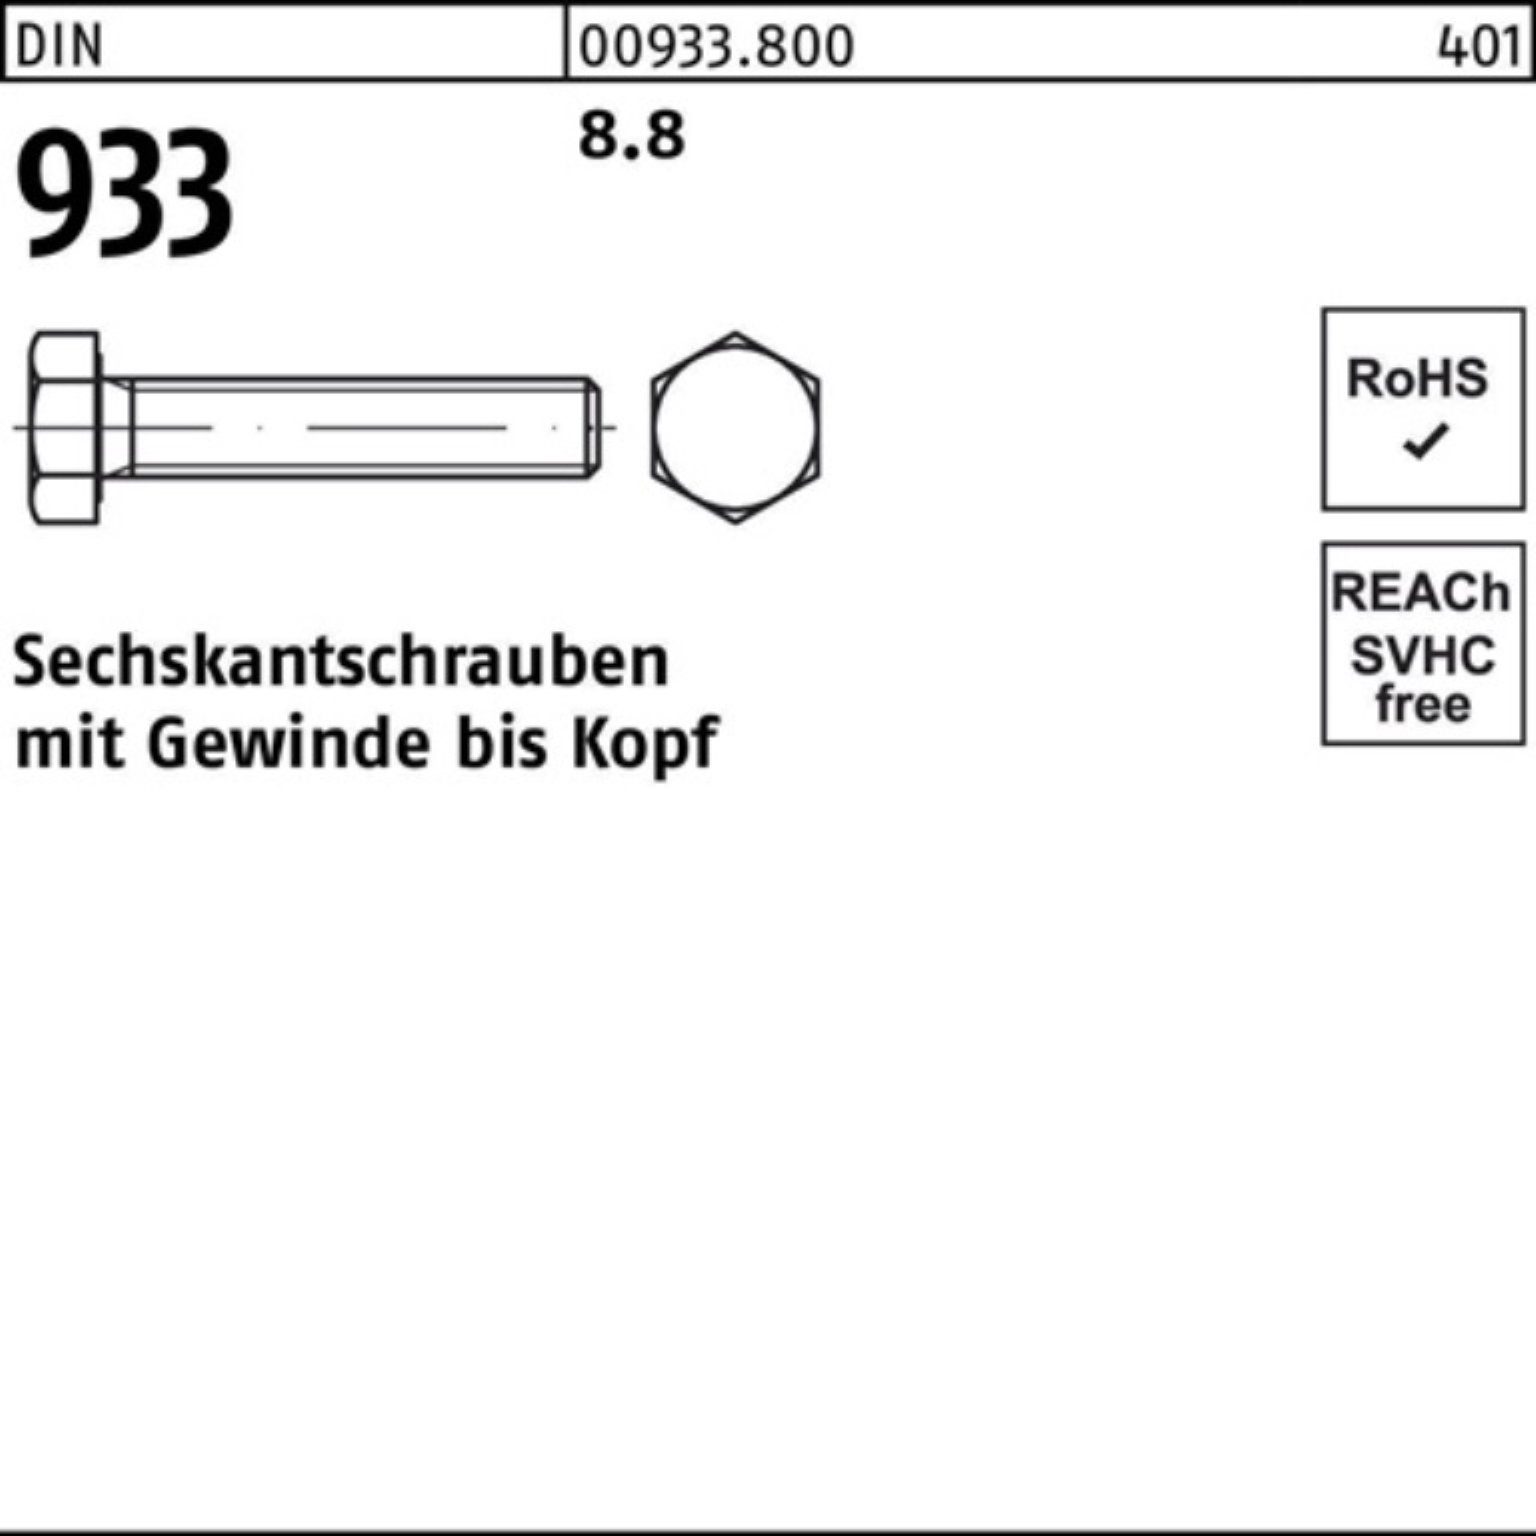 M6x DIN 200er Stück Sechskantschraube 933 VG DIN 933 Sechskantschraube 200 Pack Reyher 55 8.8